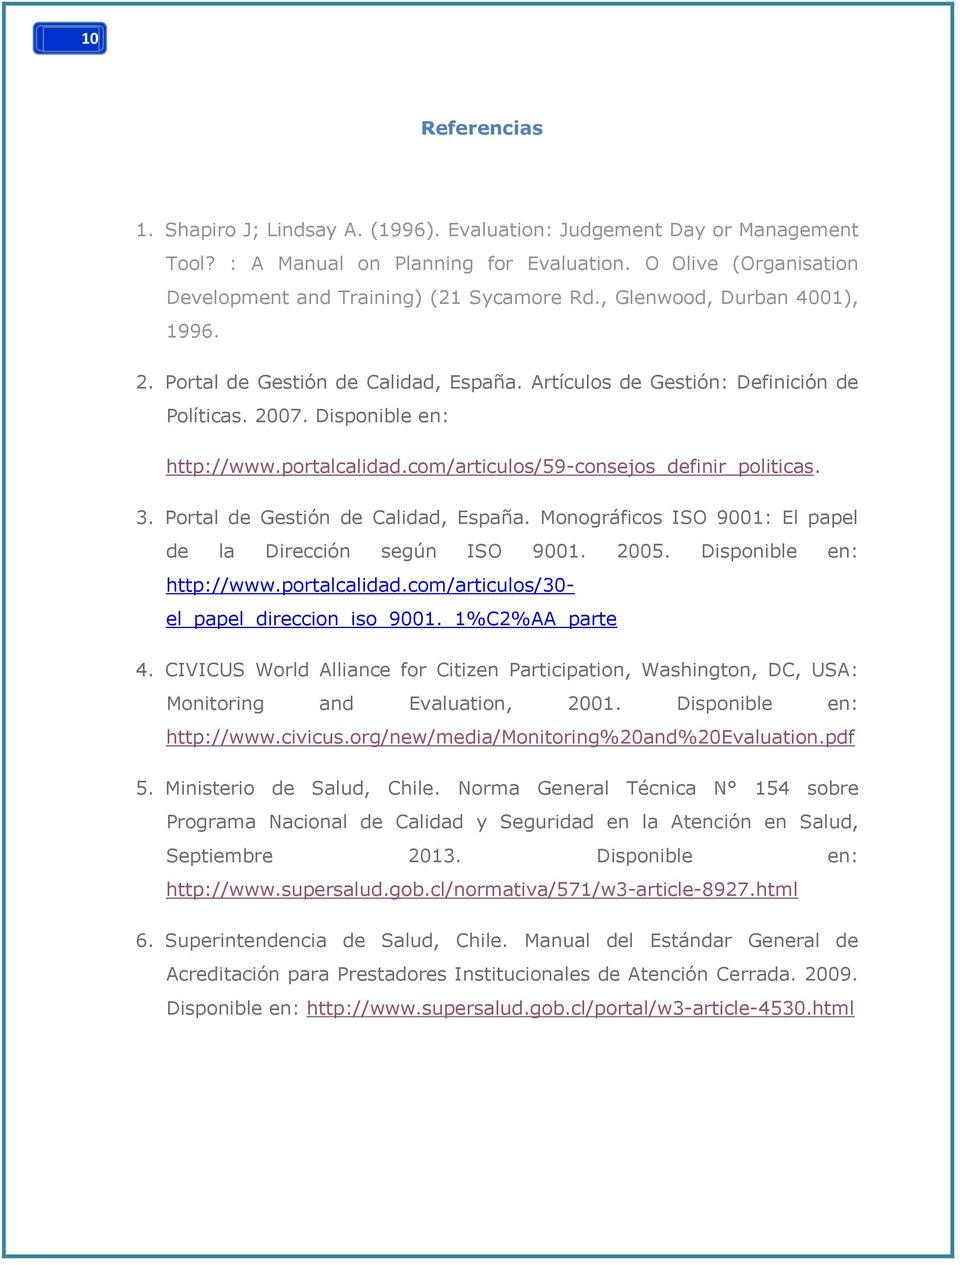 com/articulos/59-consejos_definir_politicas. 3. Portal de Gestión de Calidad, España. Monográficos ISO 9001: El papel de la Dirección según ISO 9001. 2005. Disponible en: http://www.portalcalidad.